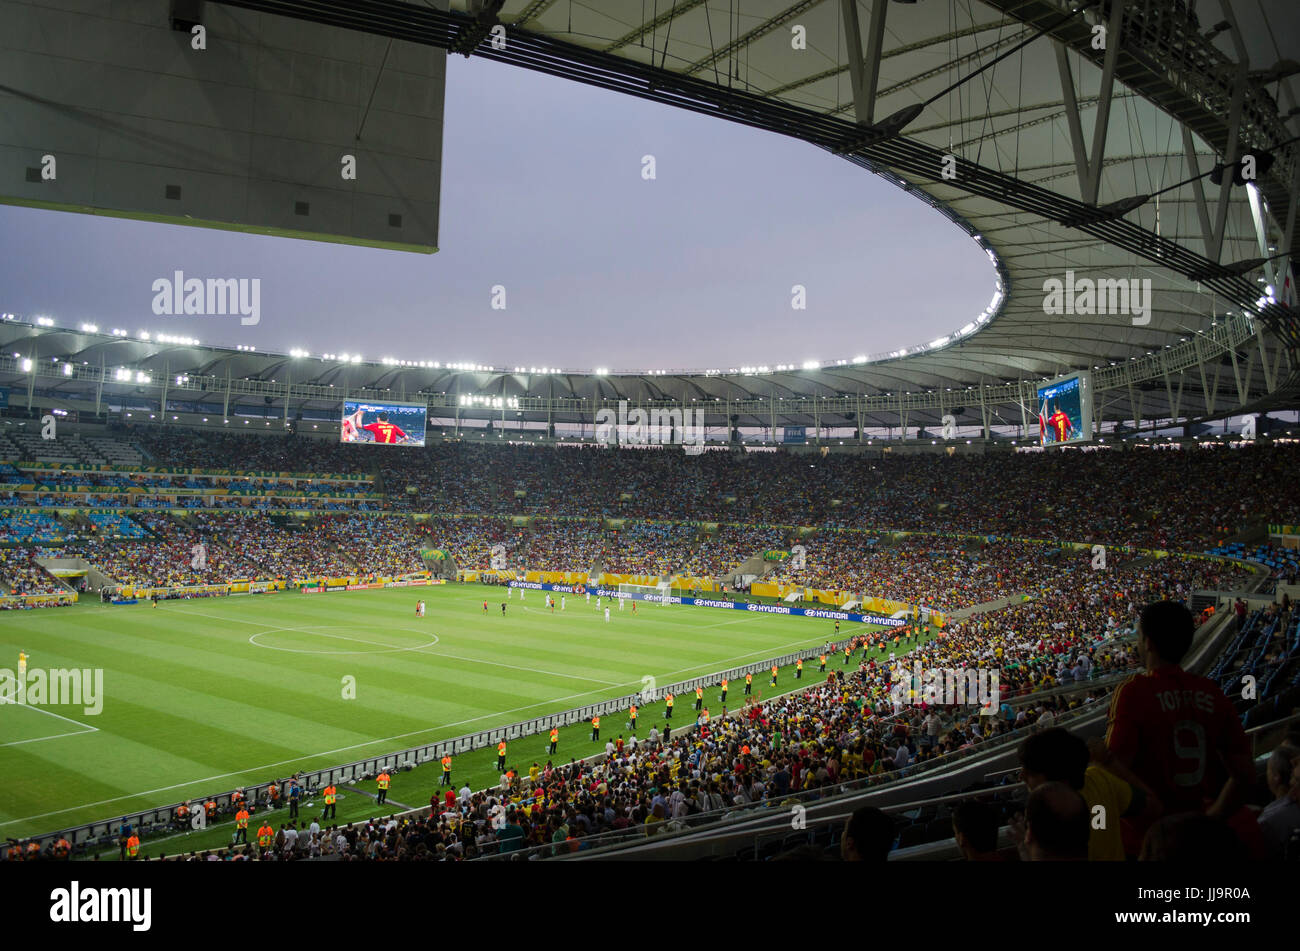 Stade du Maracanã vu de l'intérieur au cours d'un match de football, Rio de Janeiro, Brésil Banque D'Images